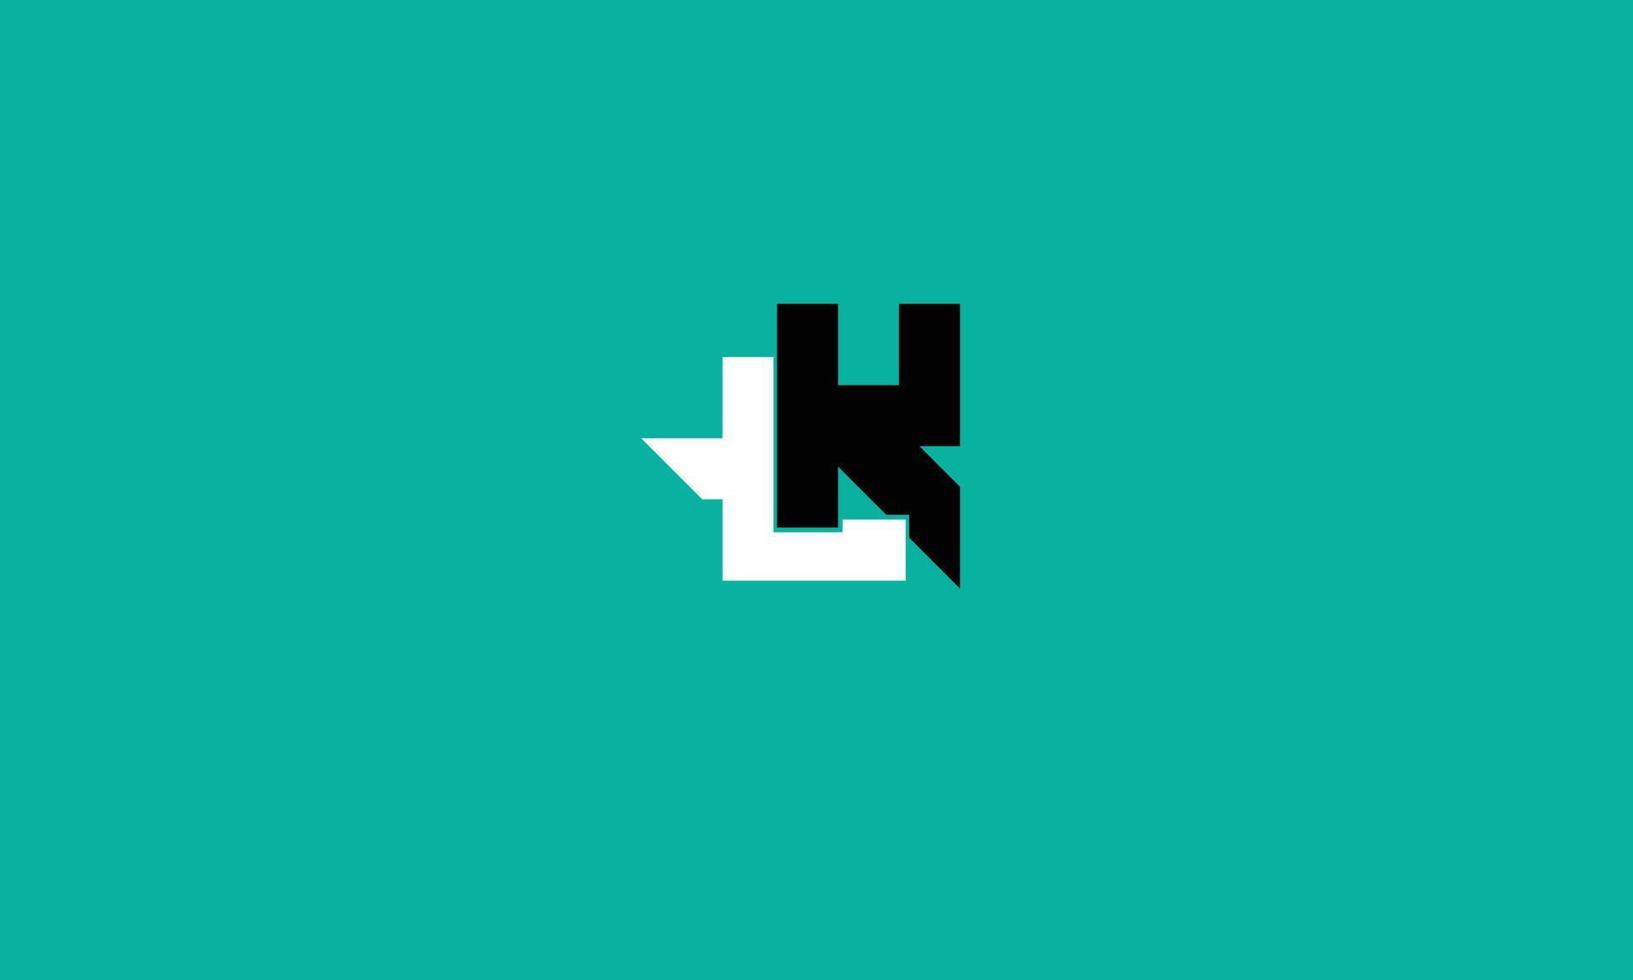 alfabeto letras iniciales monograma logo lk, kl, l y k vector